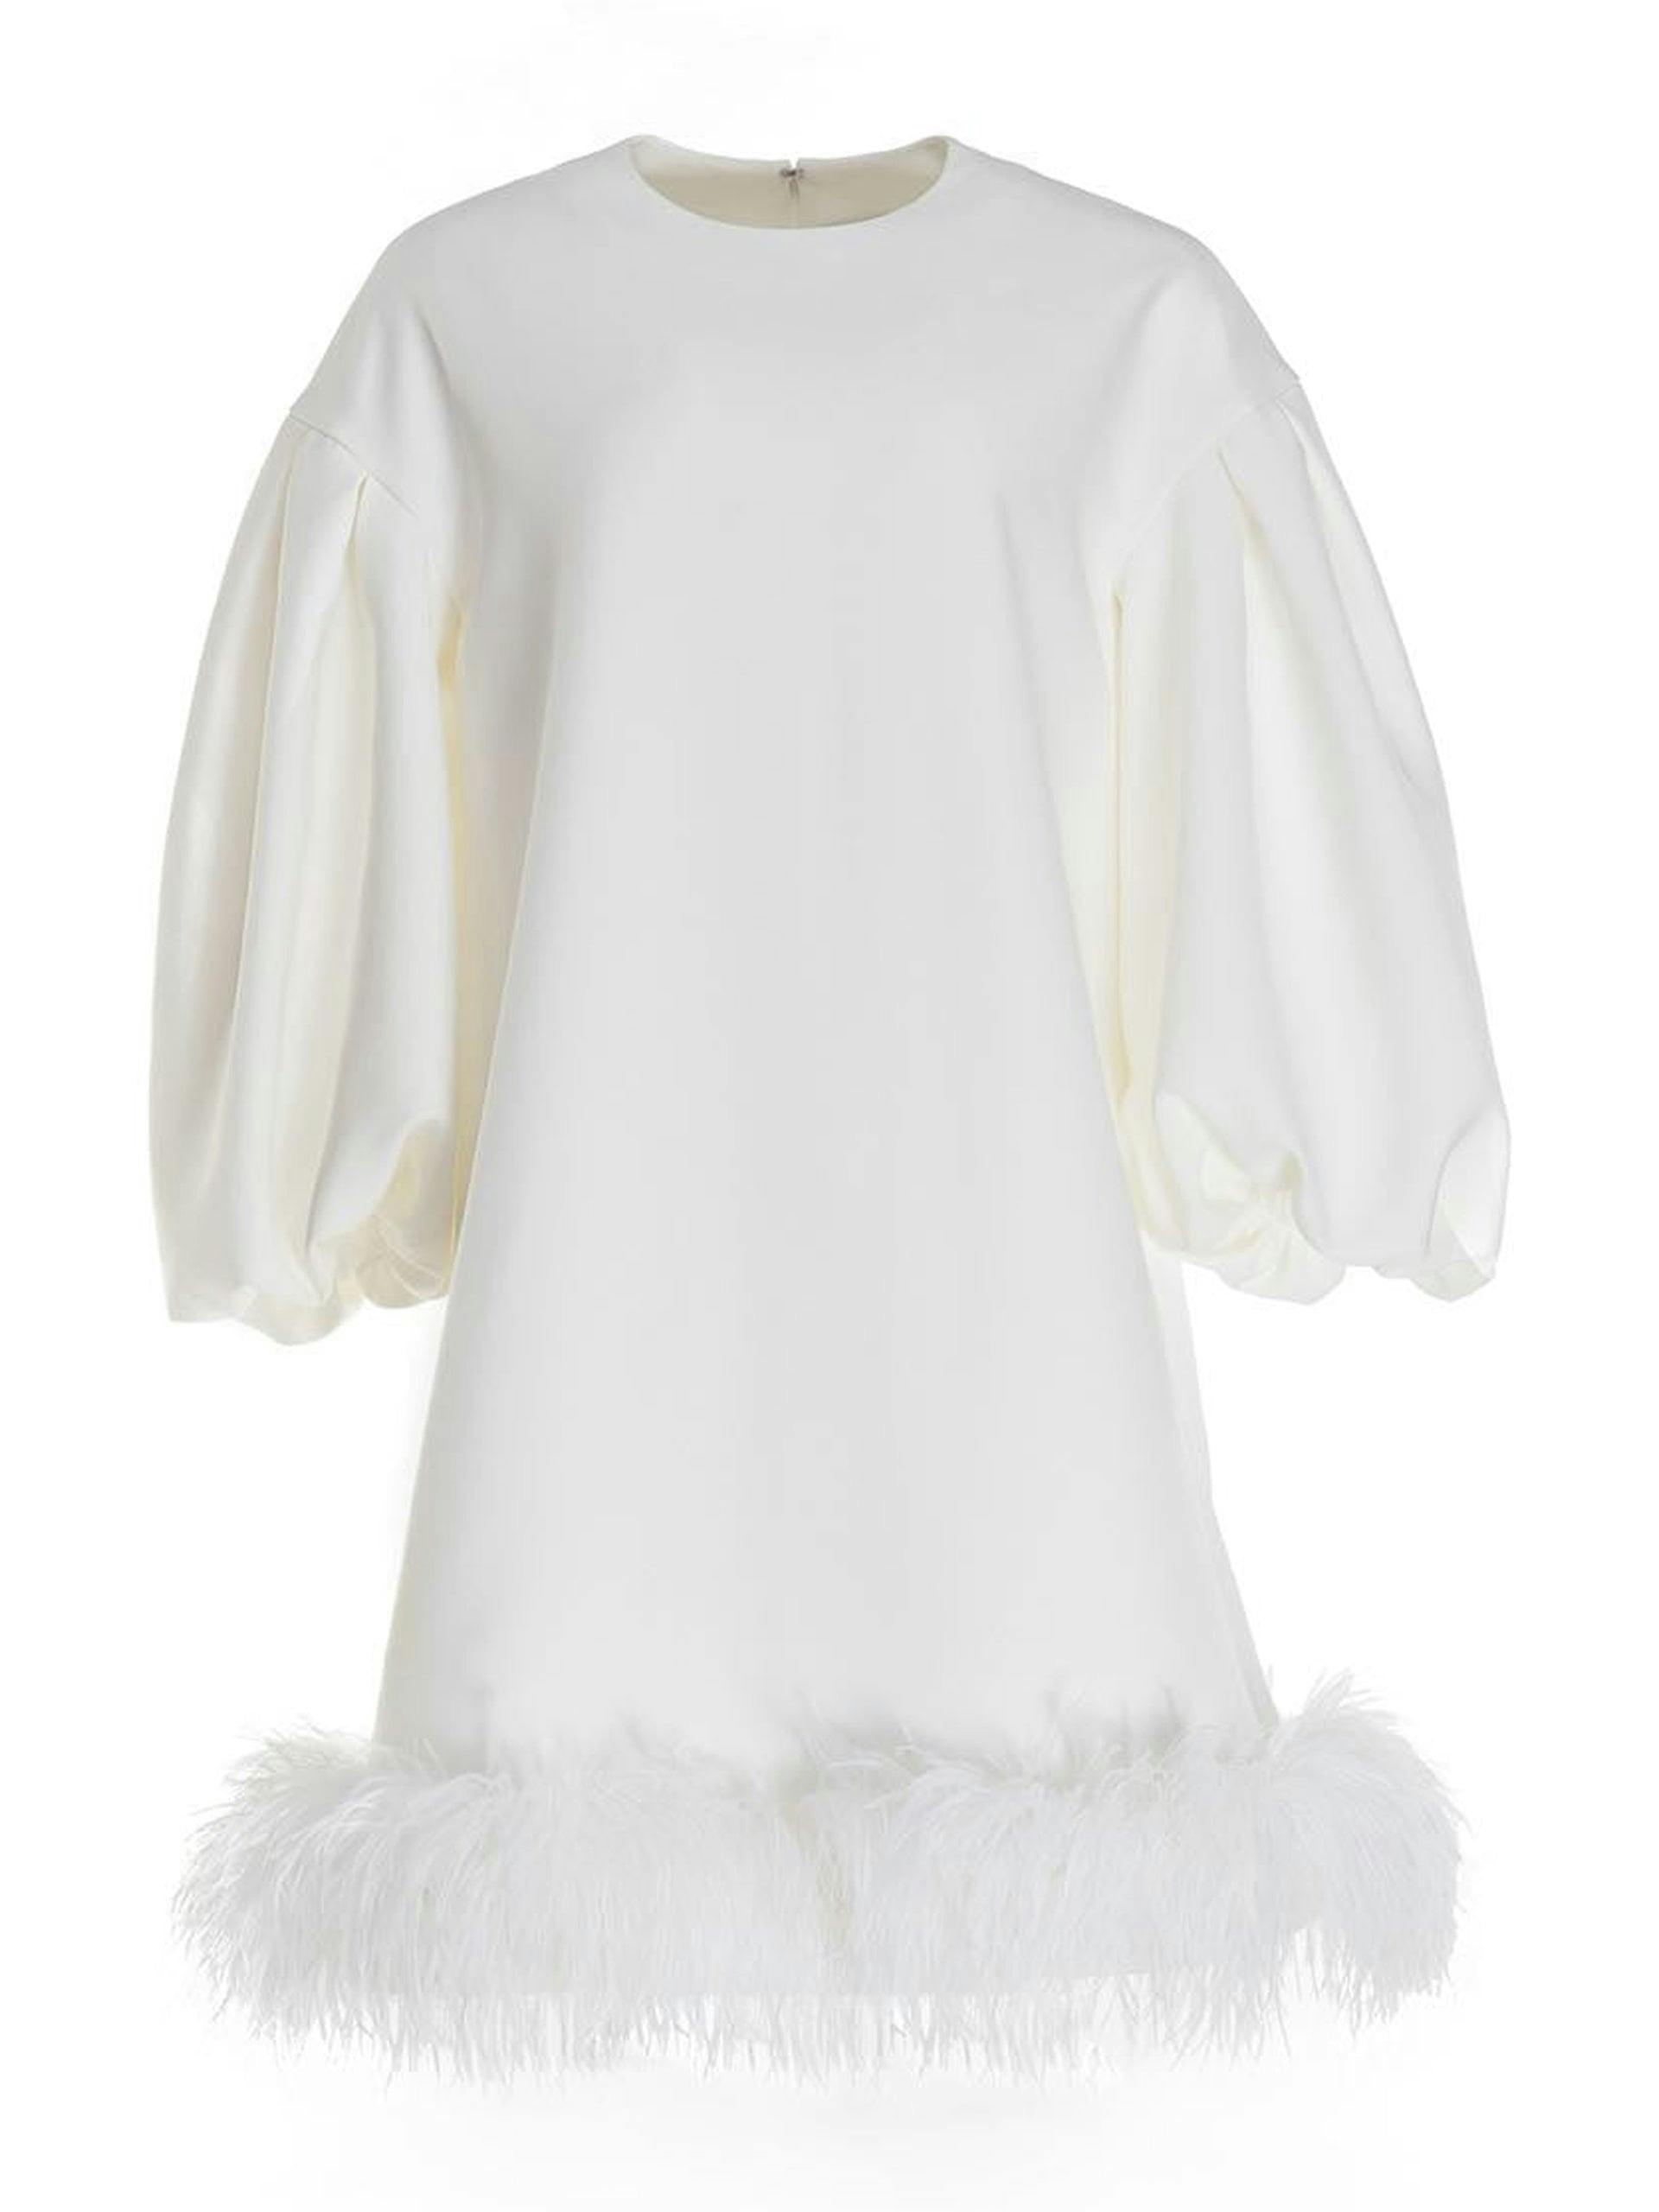 Poppy white crepe dress